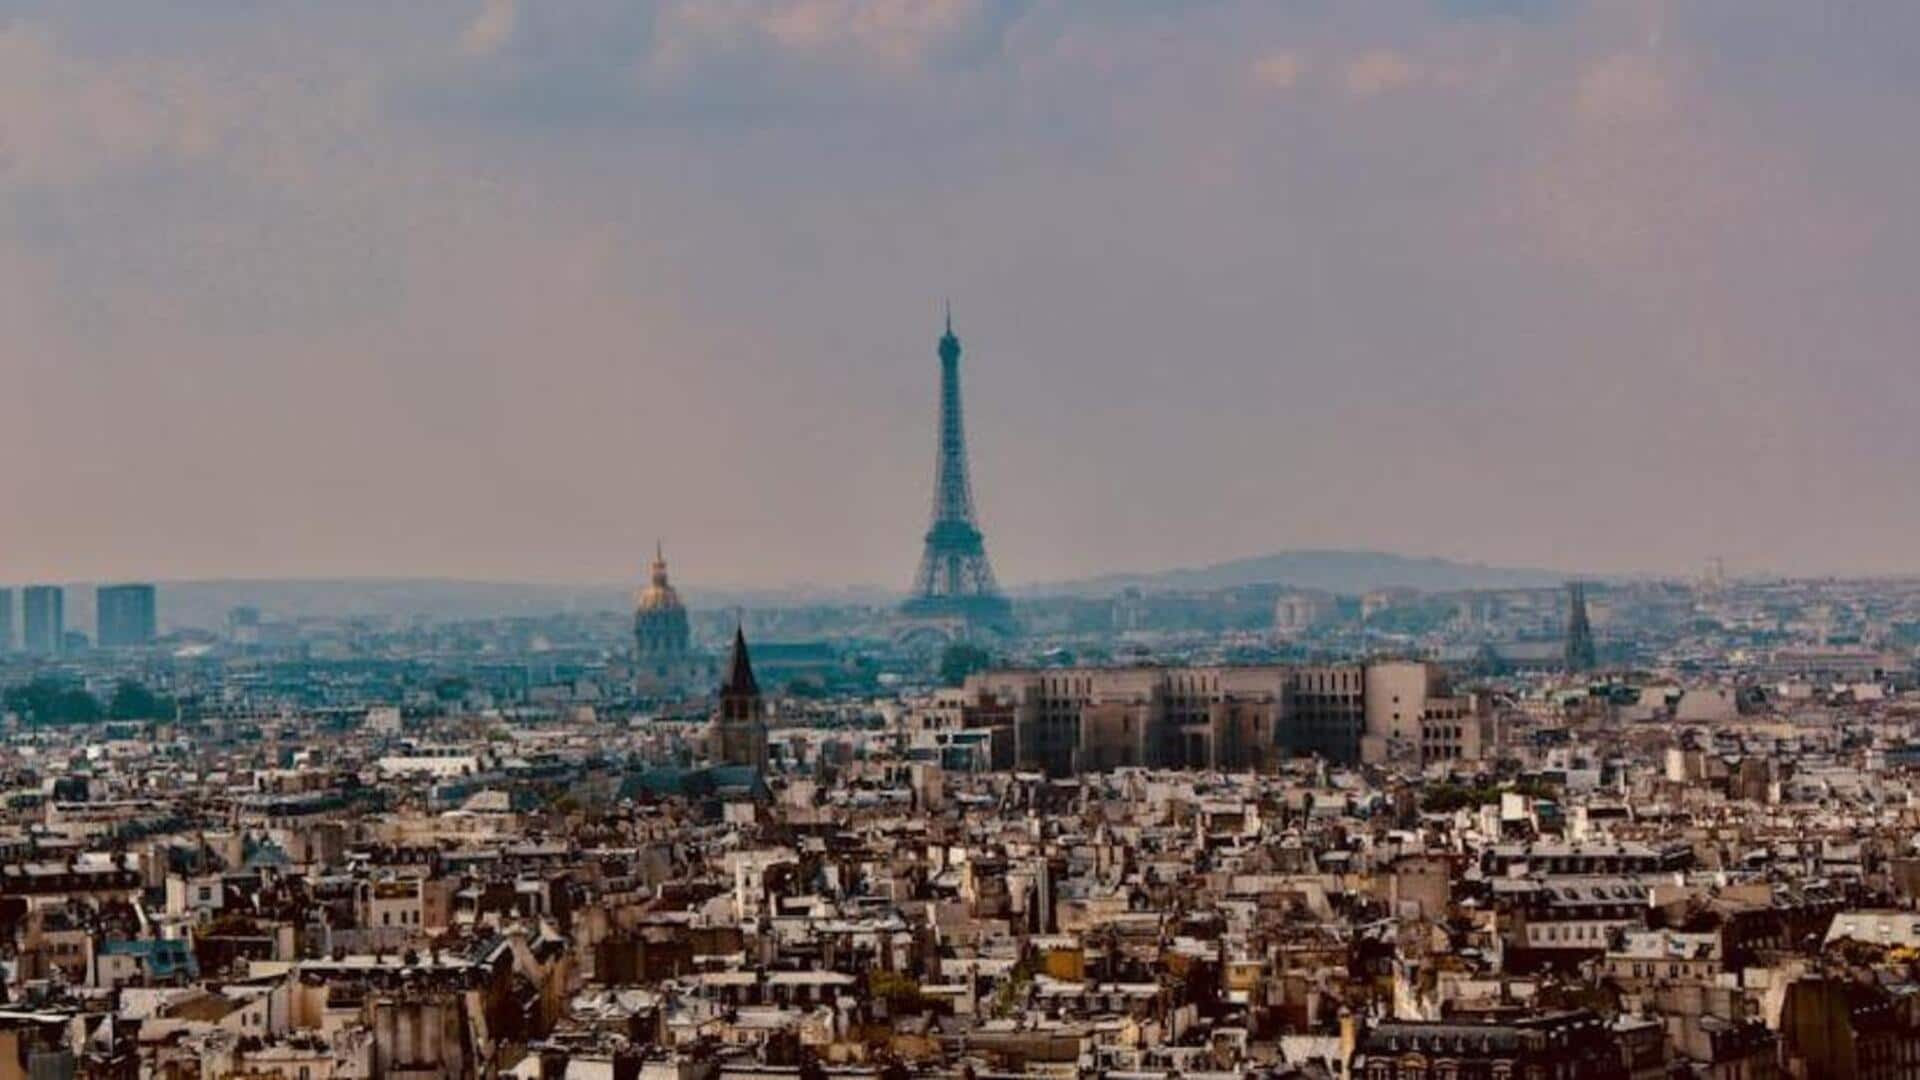 Mengungkap sisi nyata Paris dengan membongkar mitos-mitos umum